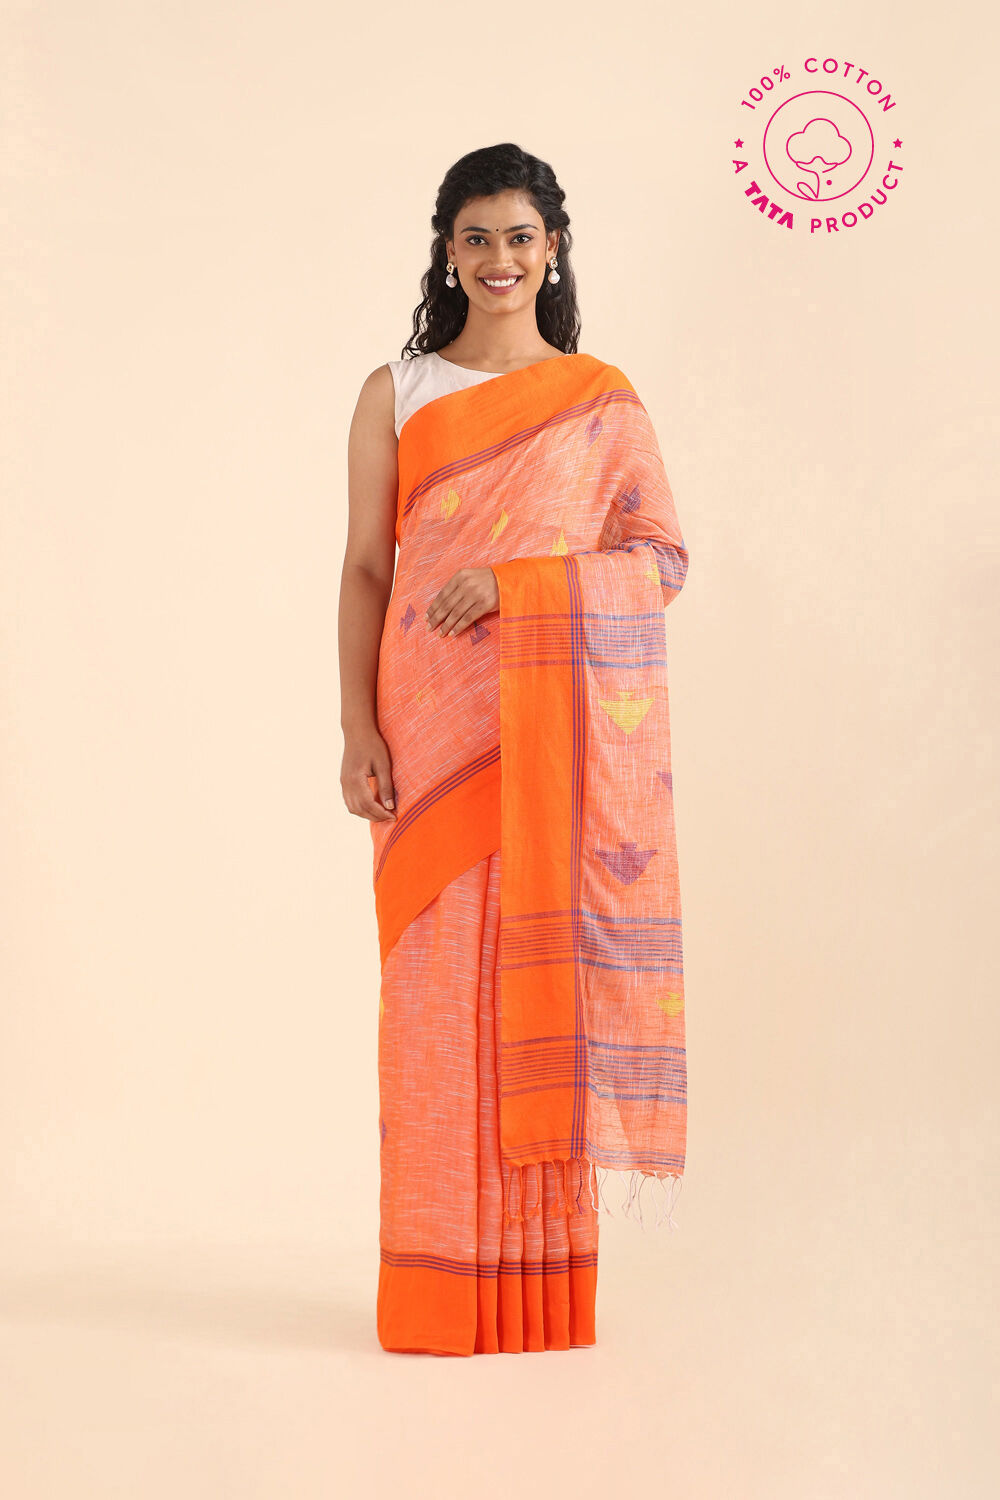 Titan's saree brand 'Taneira' strengthens retail presence, enters Chennai  market